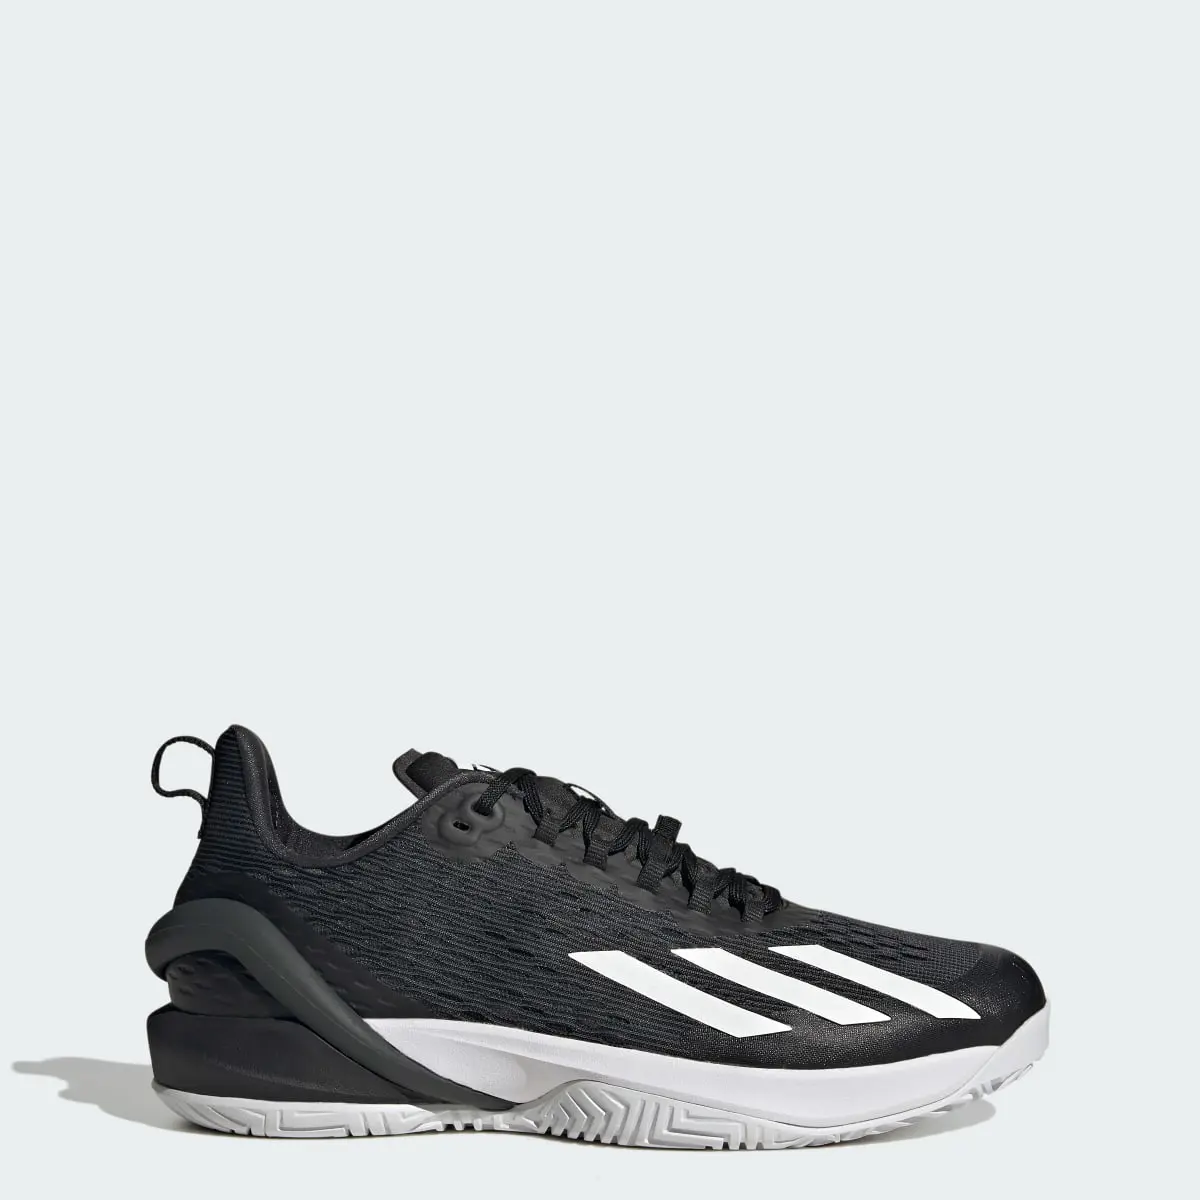 Adidas Adizero Cybersonic Tennis Shoes. 1